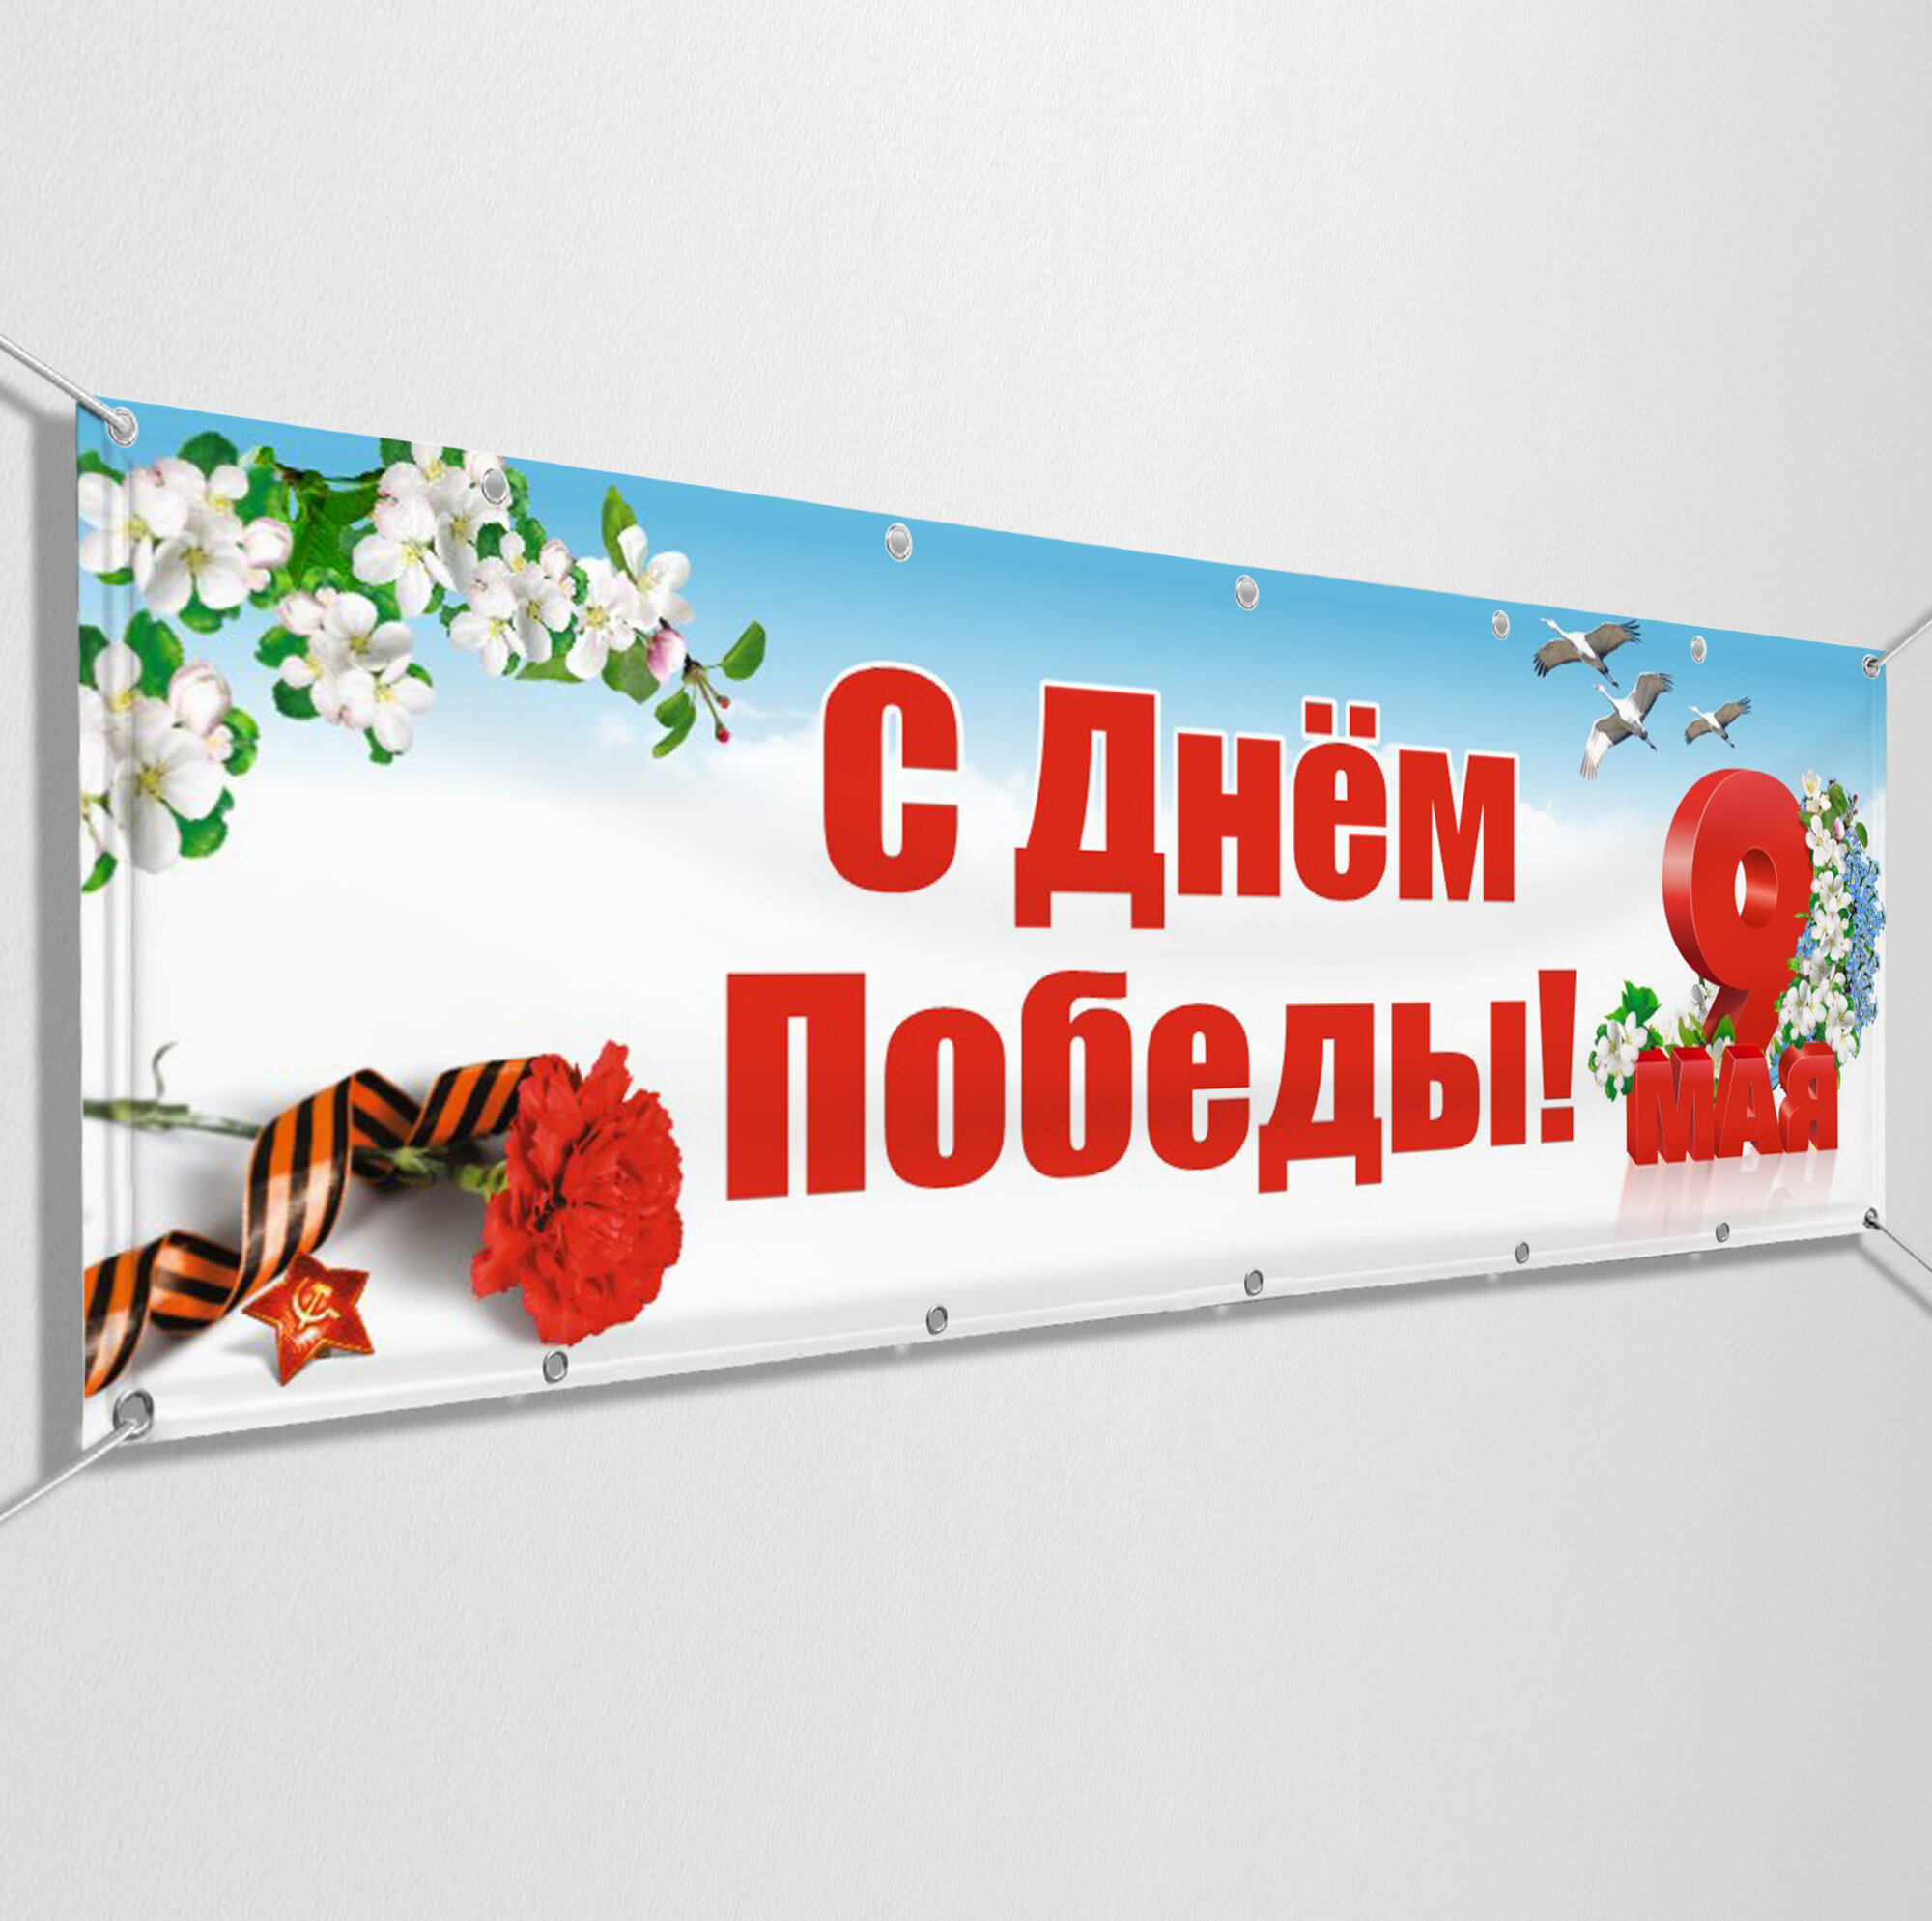 Баннер на 9 мая / Растяжка ко Дню Победы / 2x0.4 м.